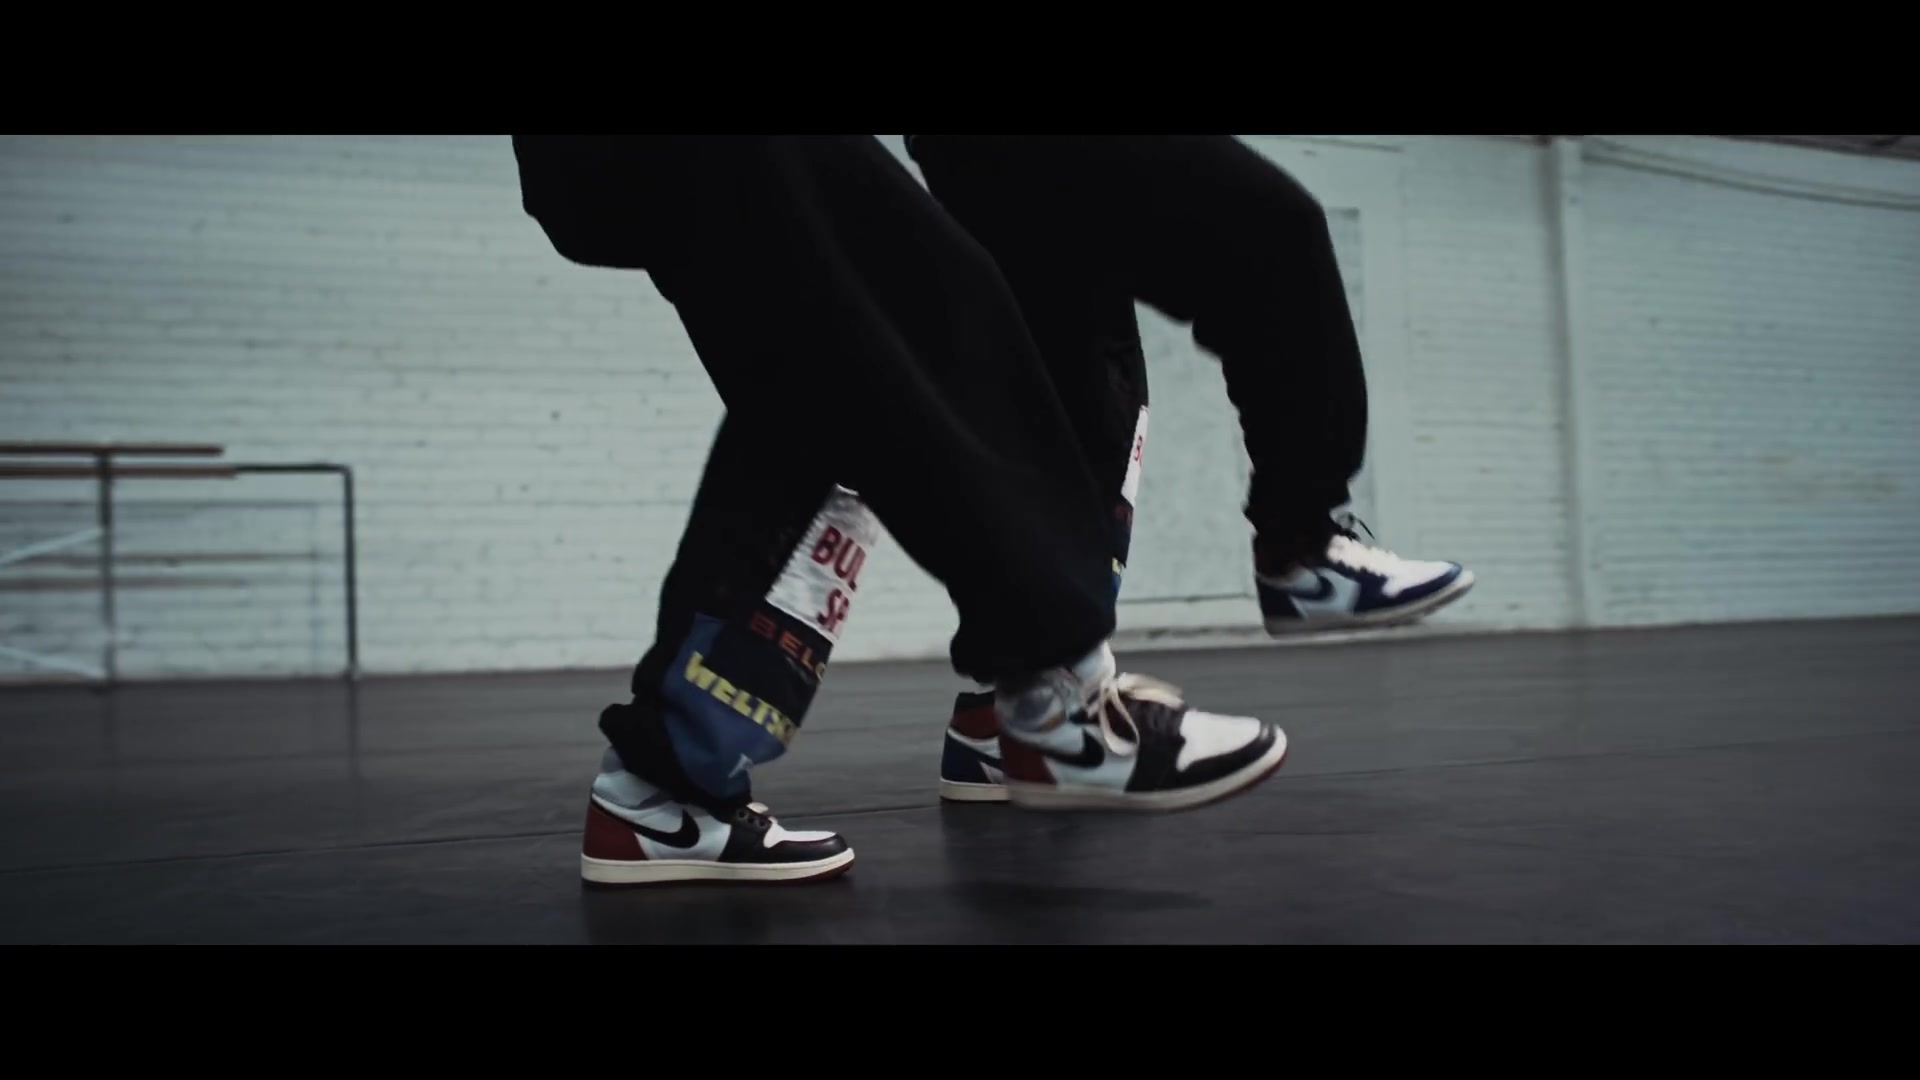 Nike Sneakers Worn by Chris Brown in 